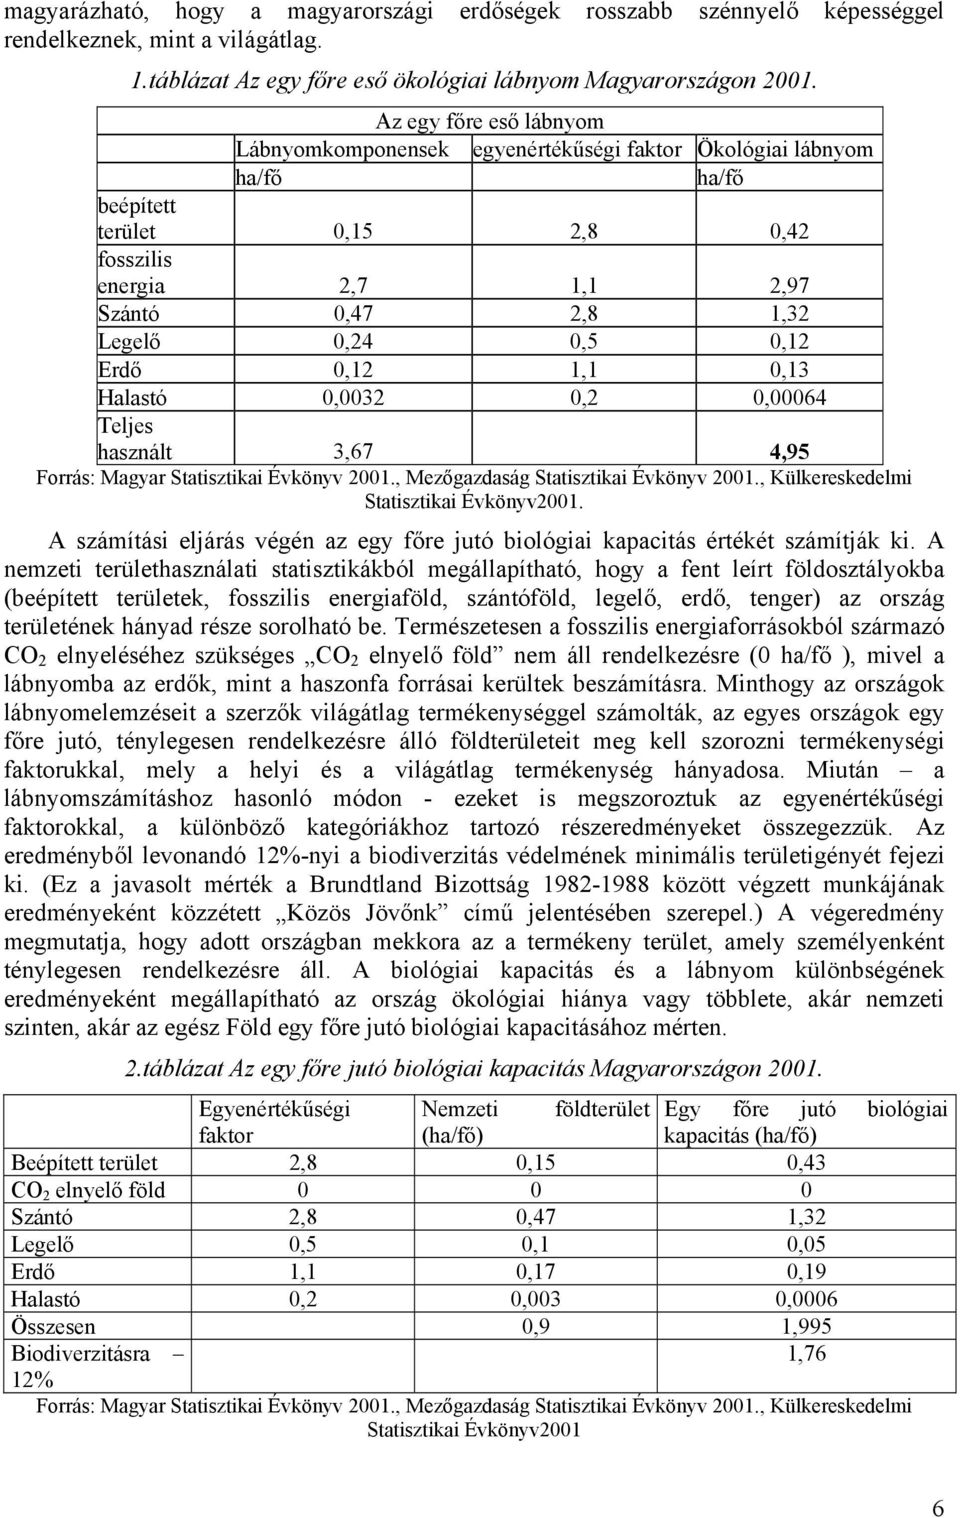 0,12 Erdő 0,12 1,1 0,13 Halastó 0,0032 0,2 0,00064 Teljes használt 3,67 4,95 Forrás: Magyar Statisztikai Évkönyv 2001., Mezőgazdaság Statisztikai Évkönyv 2001.